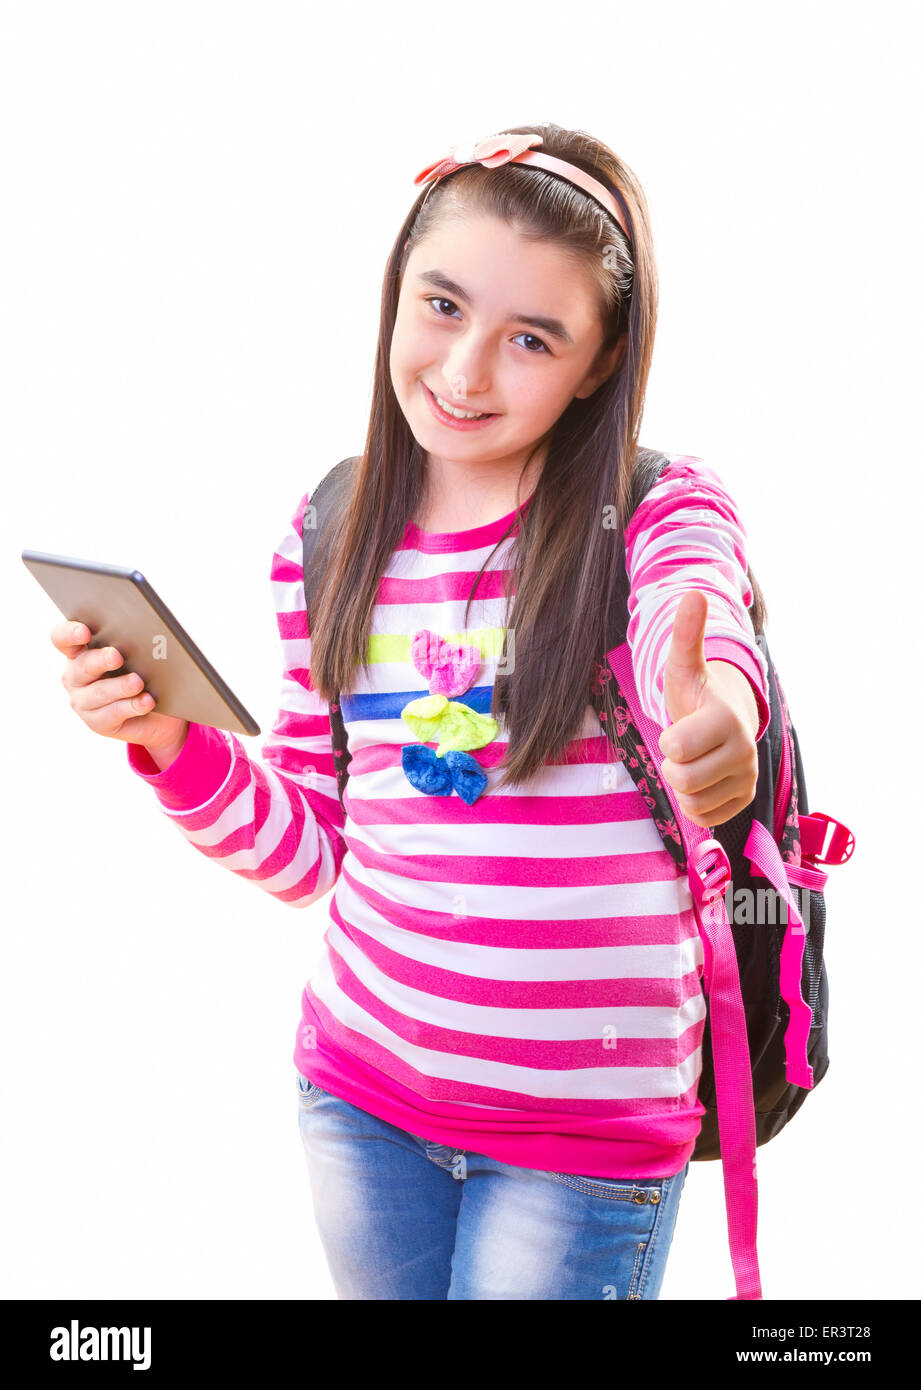 Beautiful teenager fille dans des vêtements décontractés avec sac à dos holding digital tablet dans sa main Banque D'Images